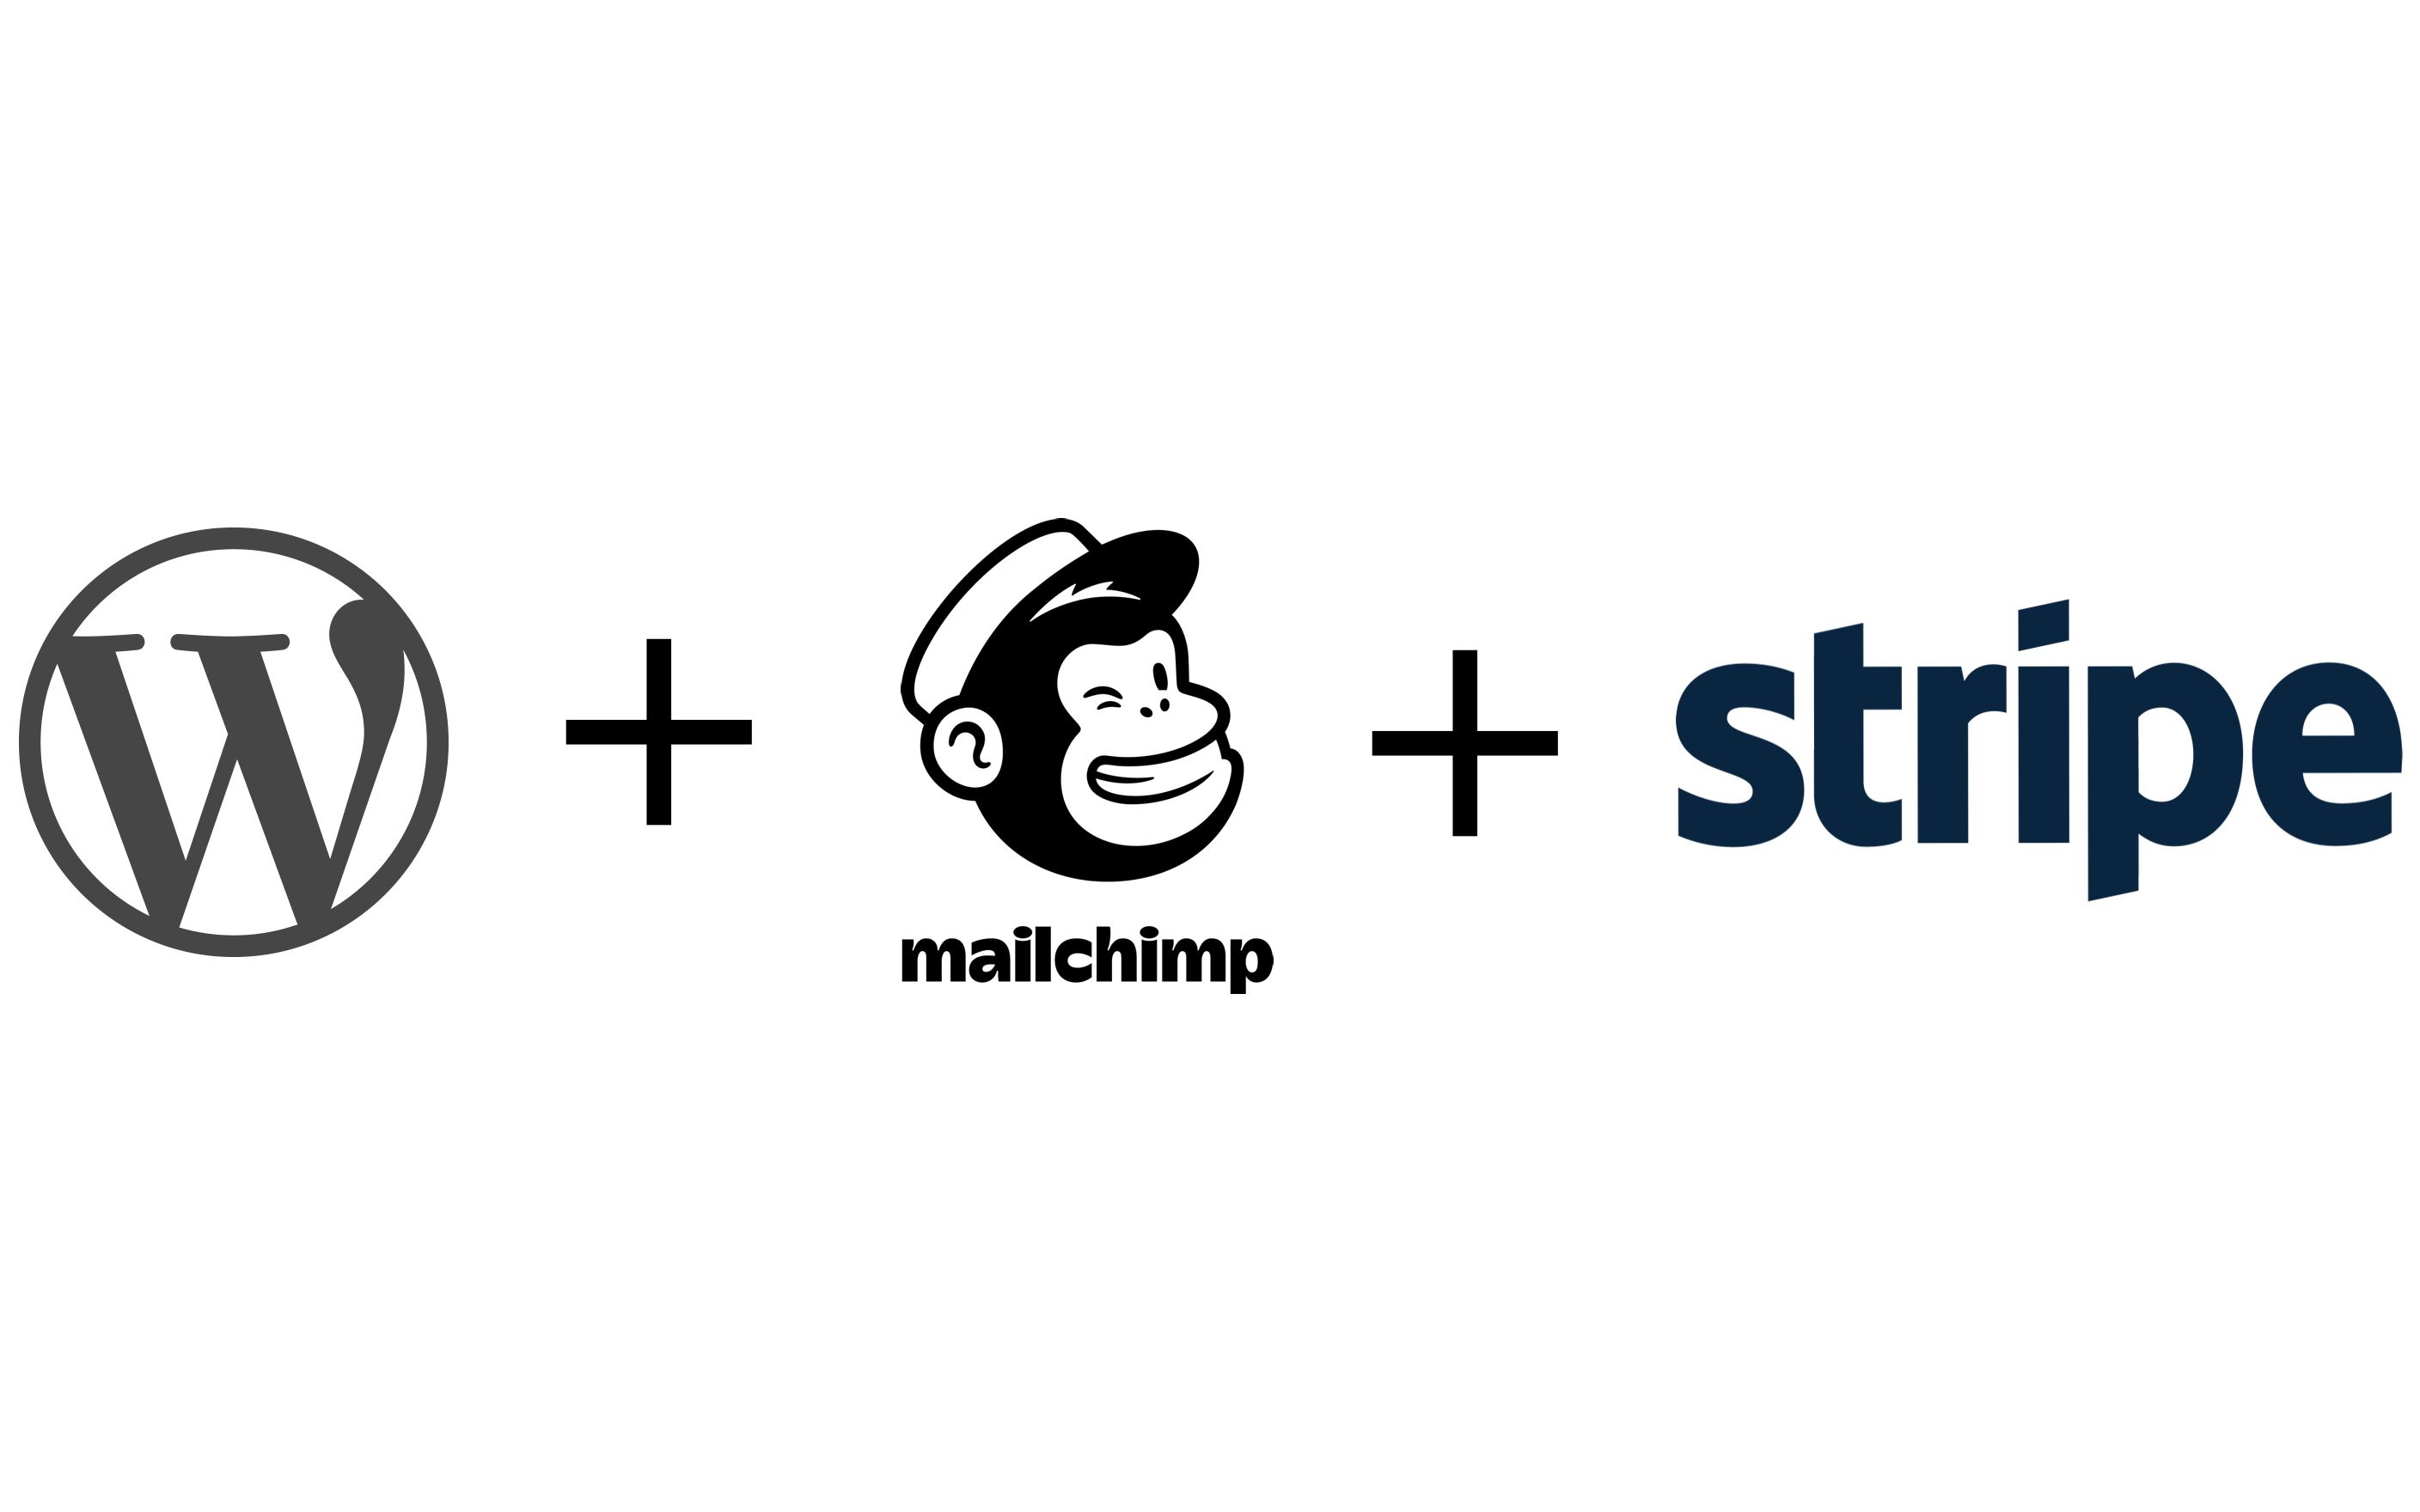 Logos of wordpress + mailchimp + stripe.